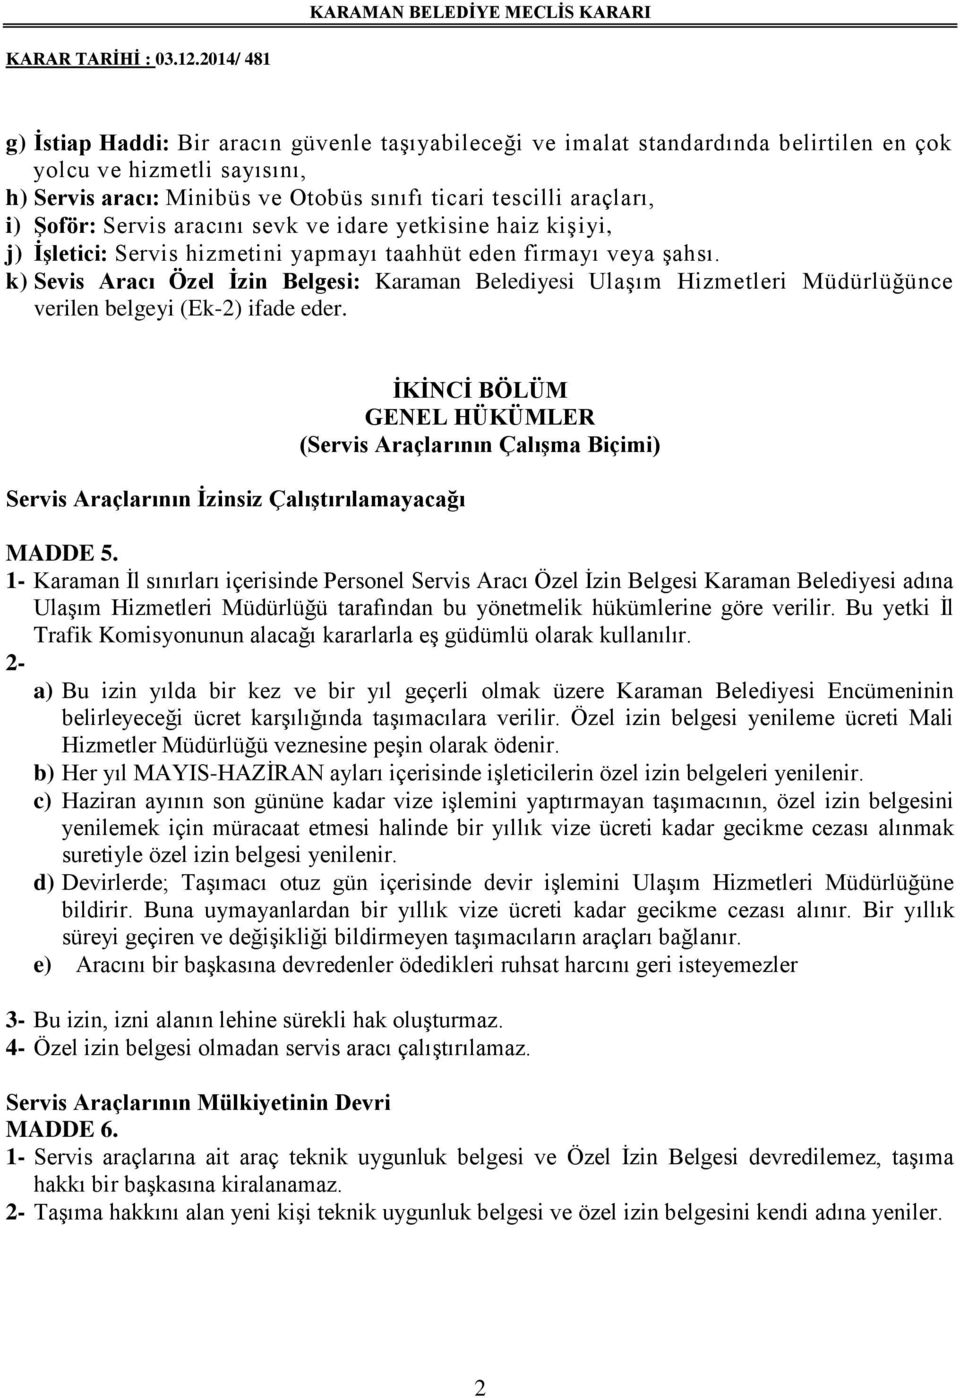 k) Sevis Aracı Özel İzin Belgesi: Karaman Belediyesi Ulaşım Hizmetleri Müdürlüğünce verilen belgeyi (Ek-2) ifade eder.